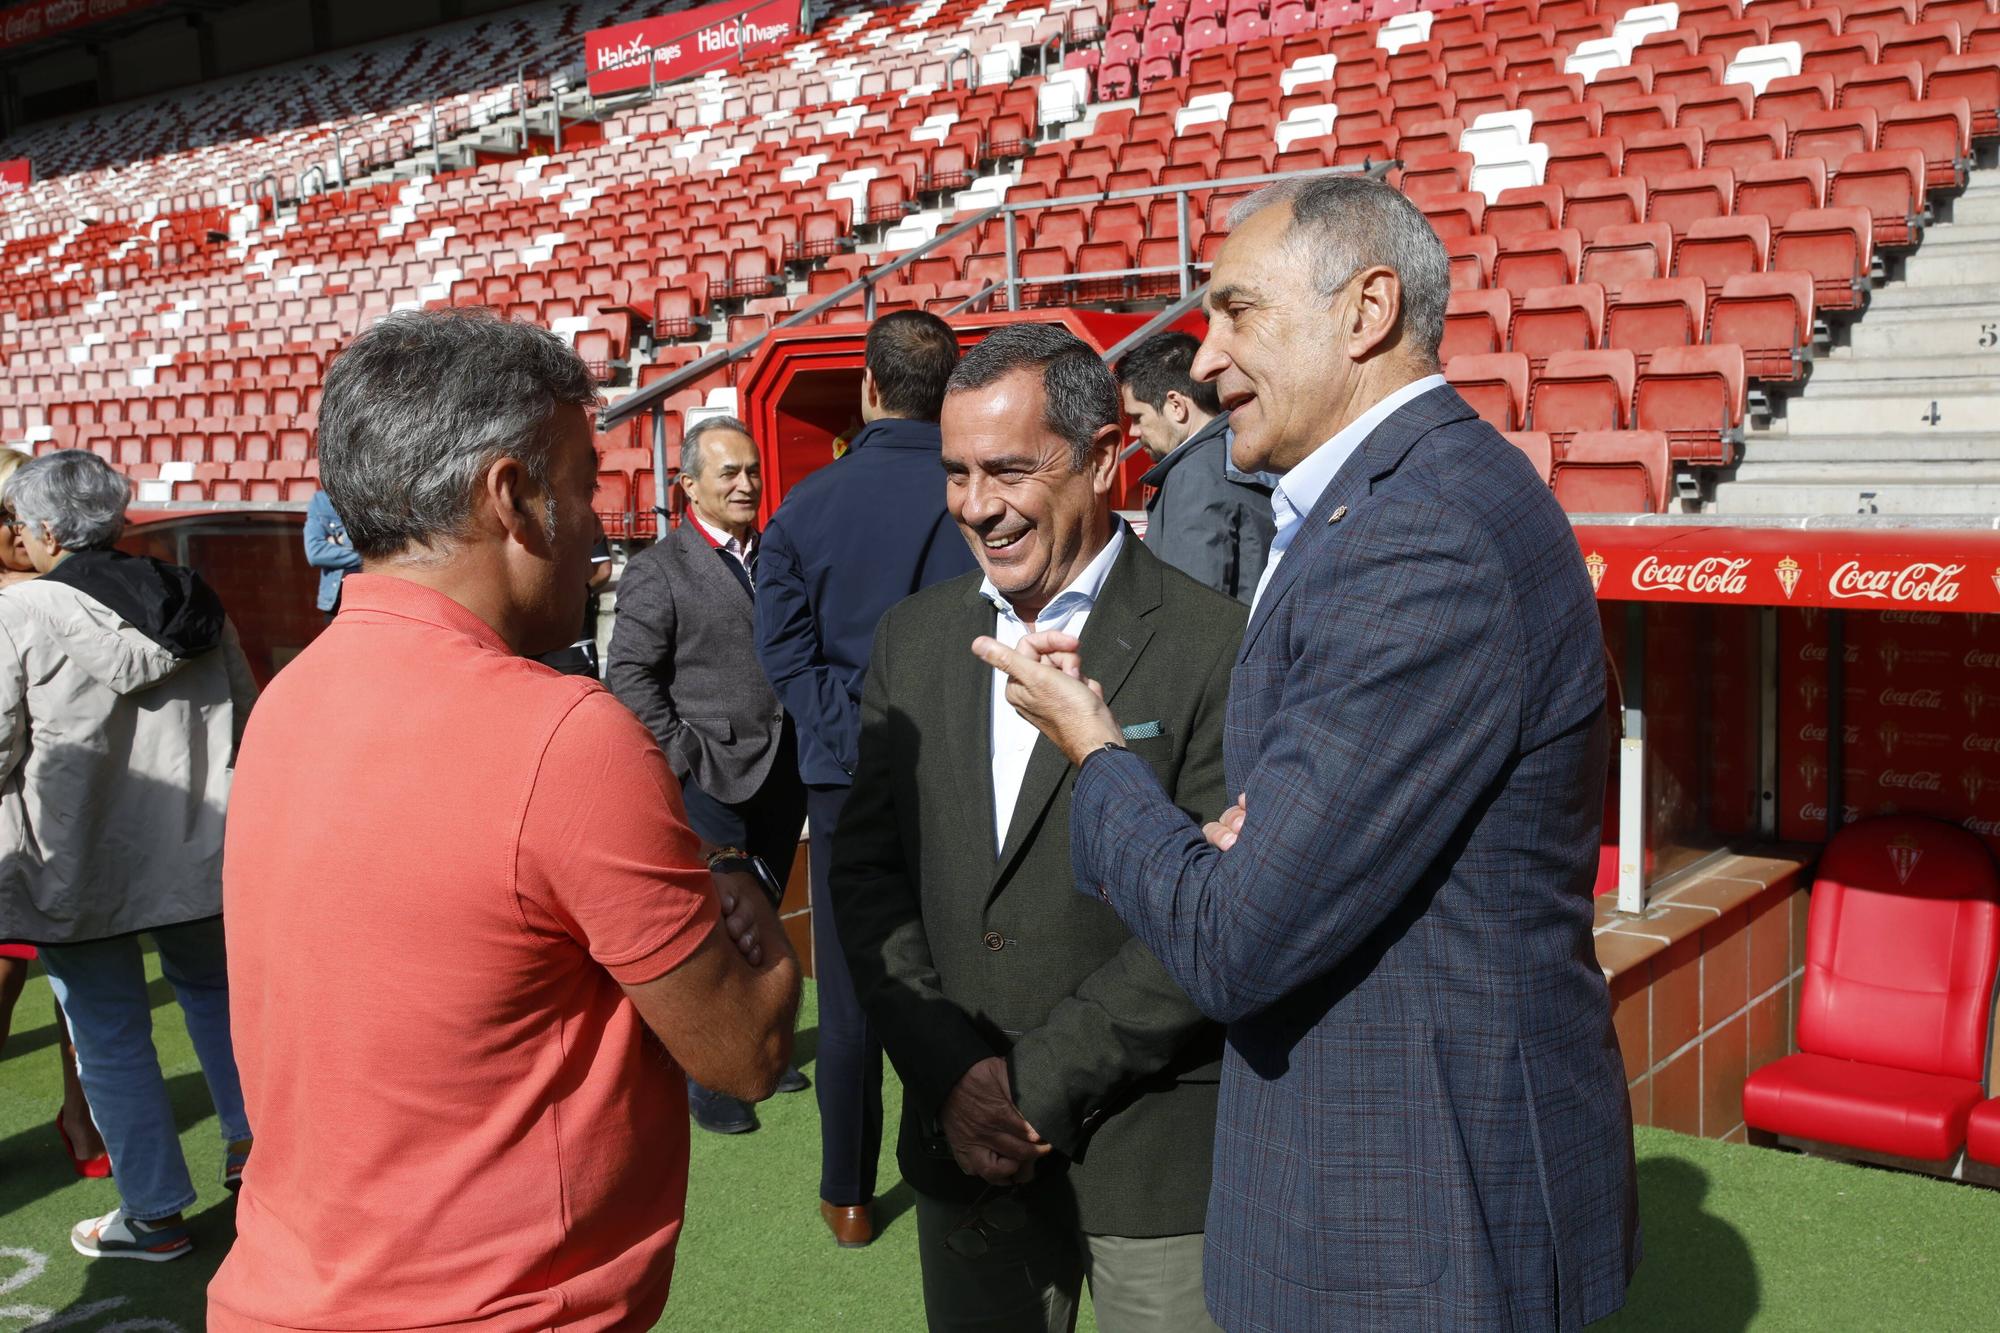 En imágenes: Así fue la visita de los técnicos de la Federación Española y portuguesa de Fútbol a El Molinón